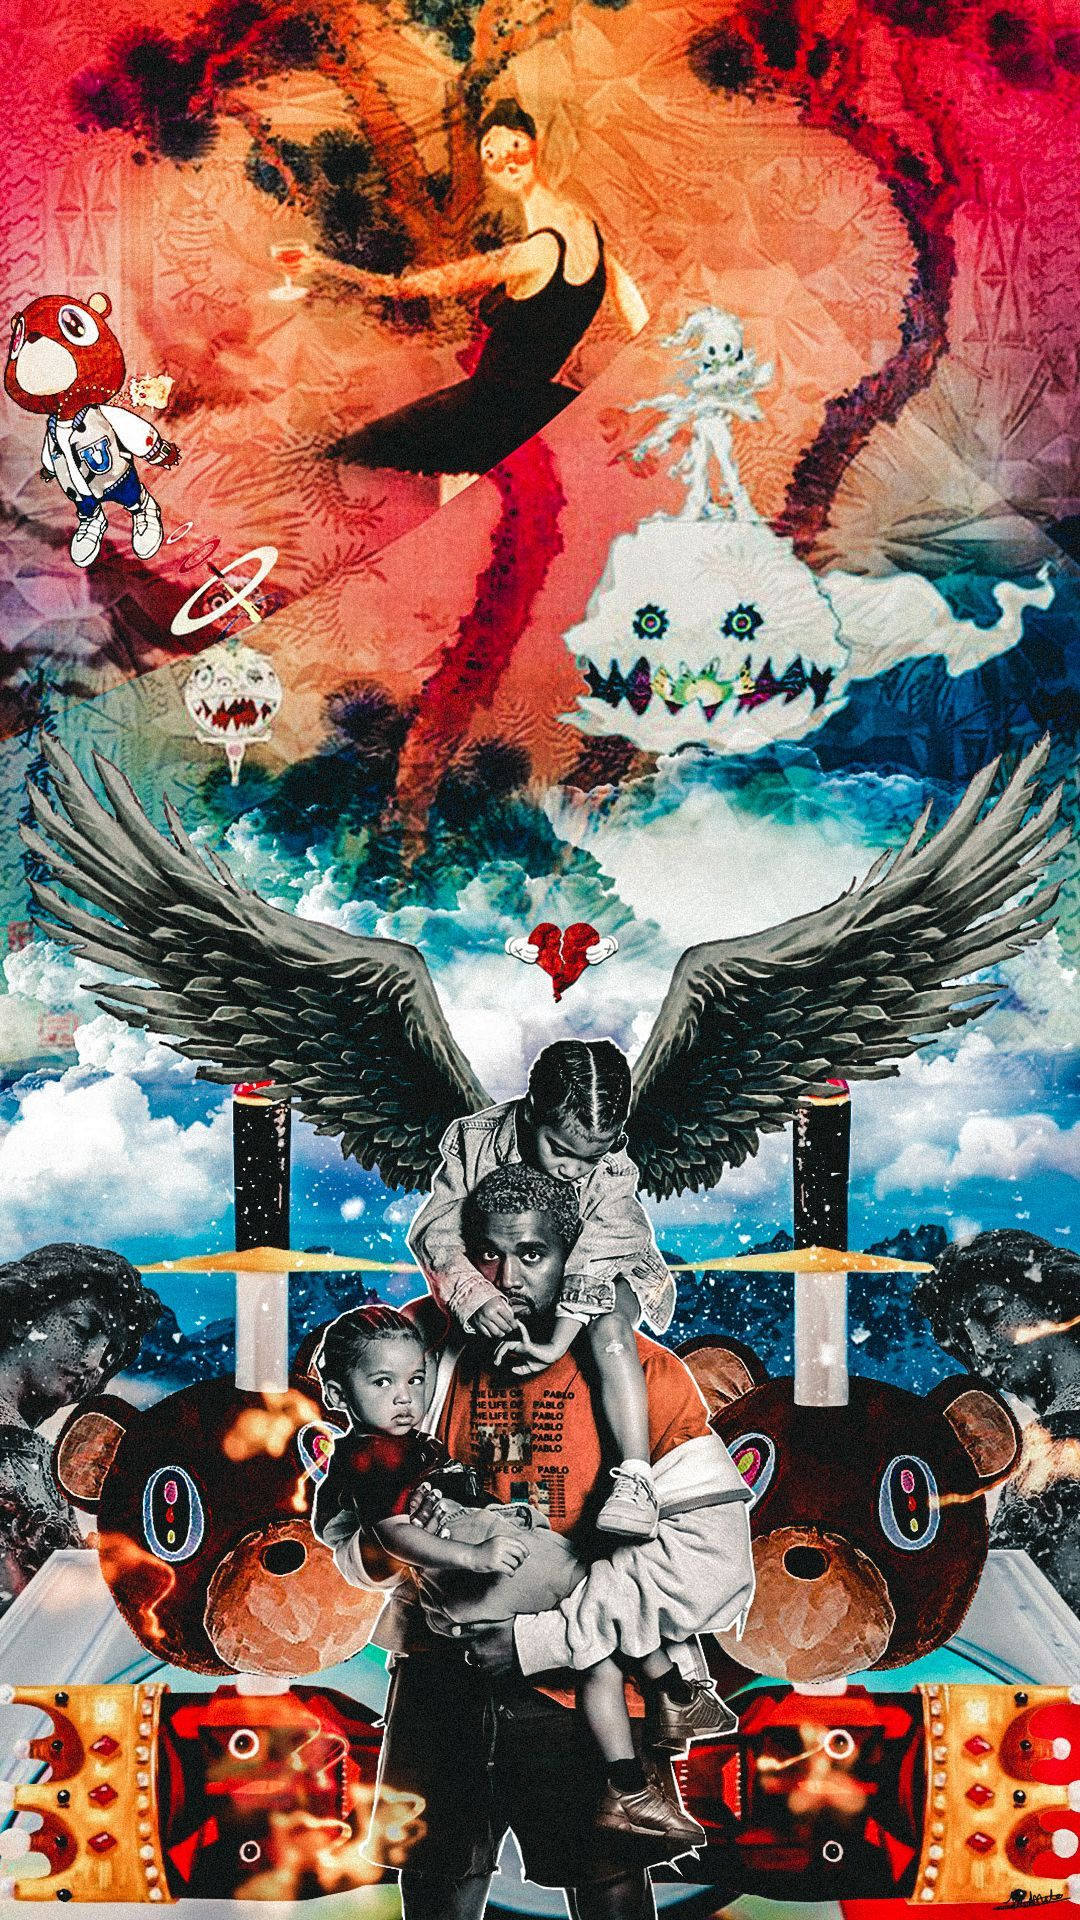 Kanye West Er Tilbage Med Det Ottende Led I Sin Musikkarriere - The Life Of Pablo. Wallpaper